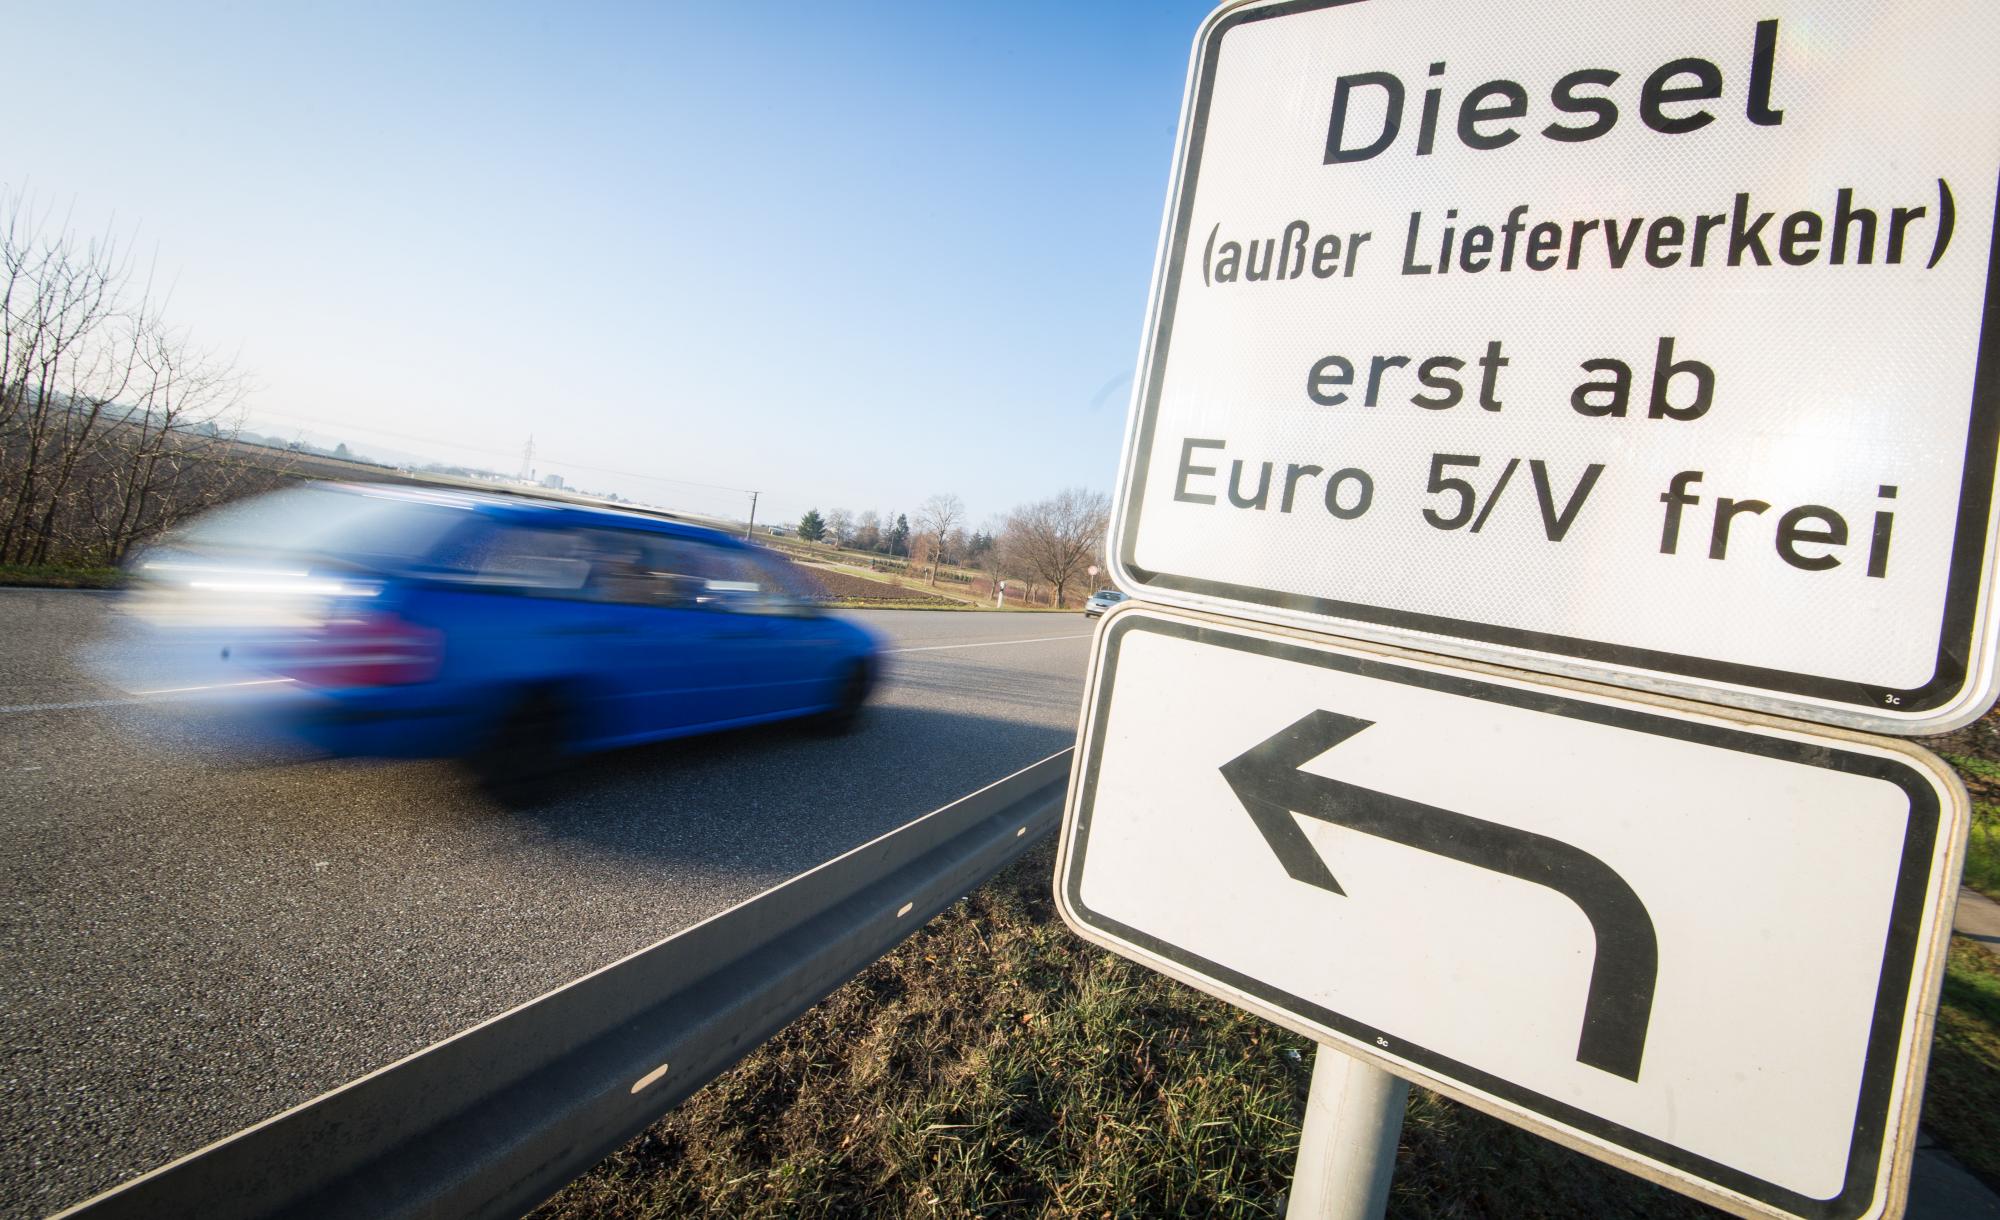 Welche strafe wenn euro 4 diesel in stuttgart - Deutschland